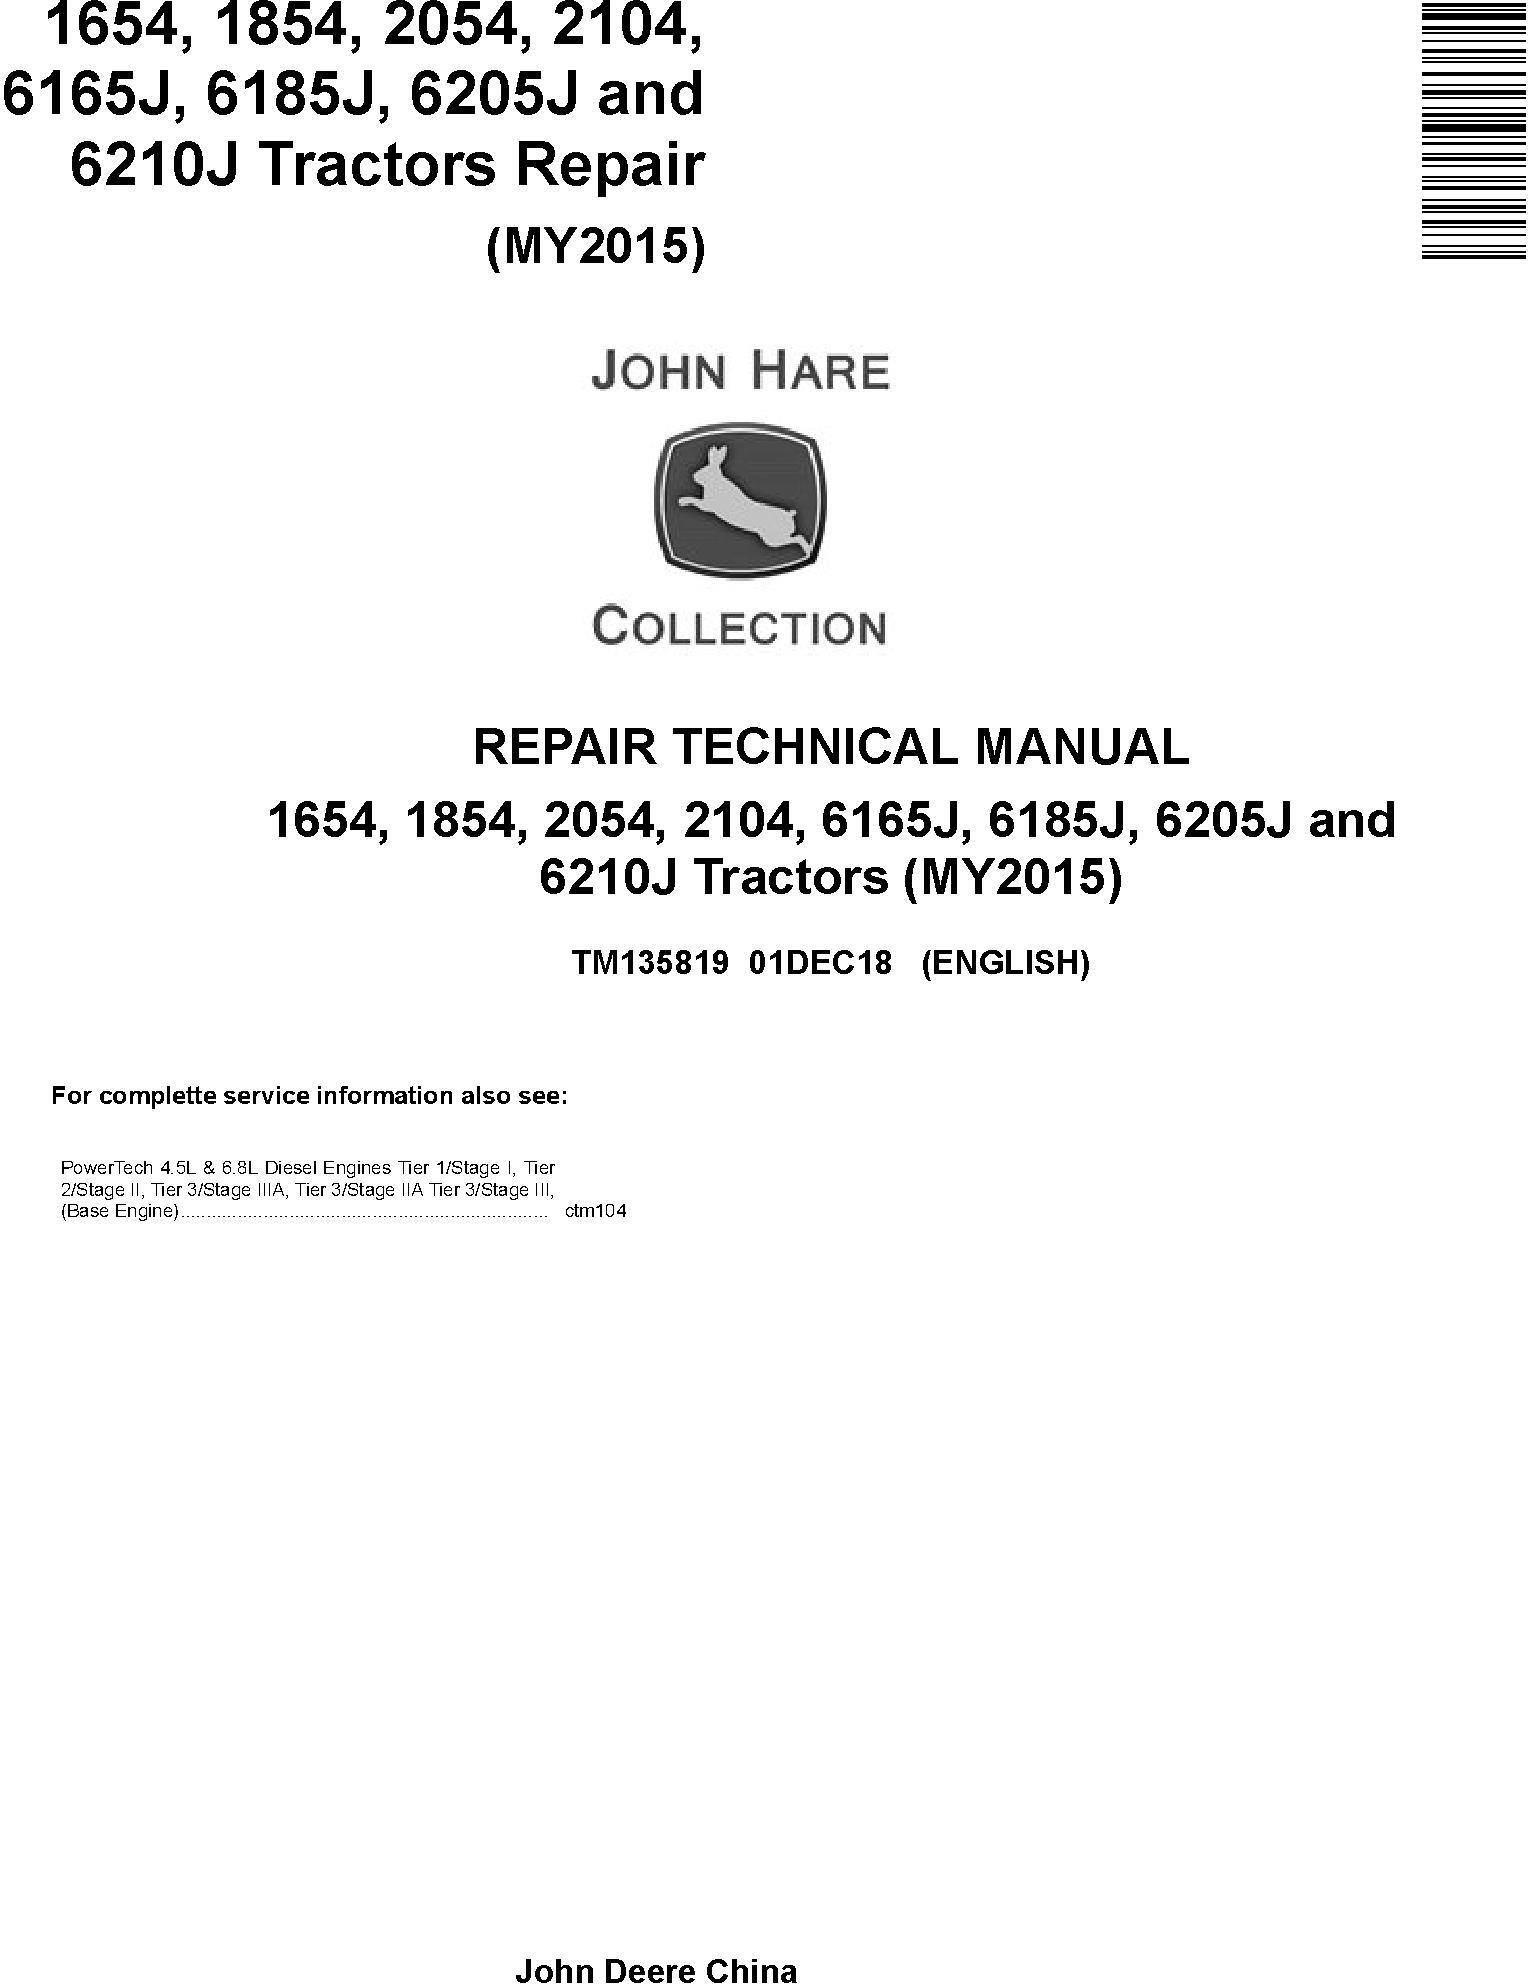 John Deere 1654 to 2104, 6165J to 6210J Tractor Repair Technical Manual TM135819